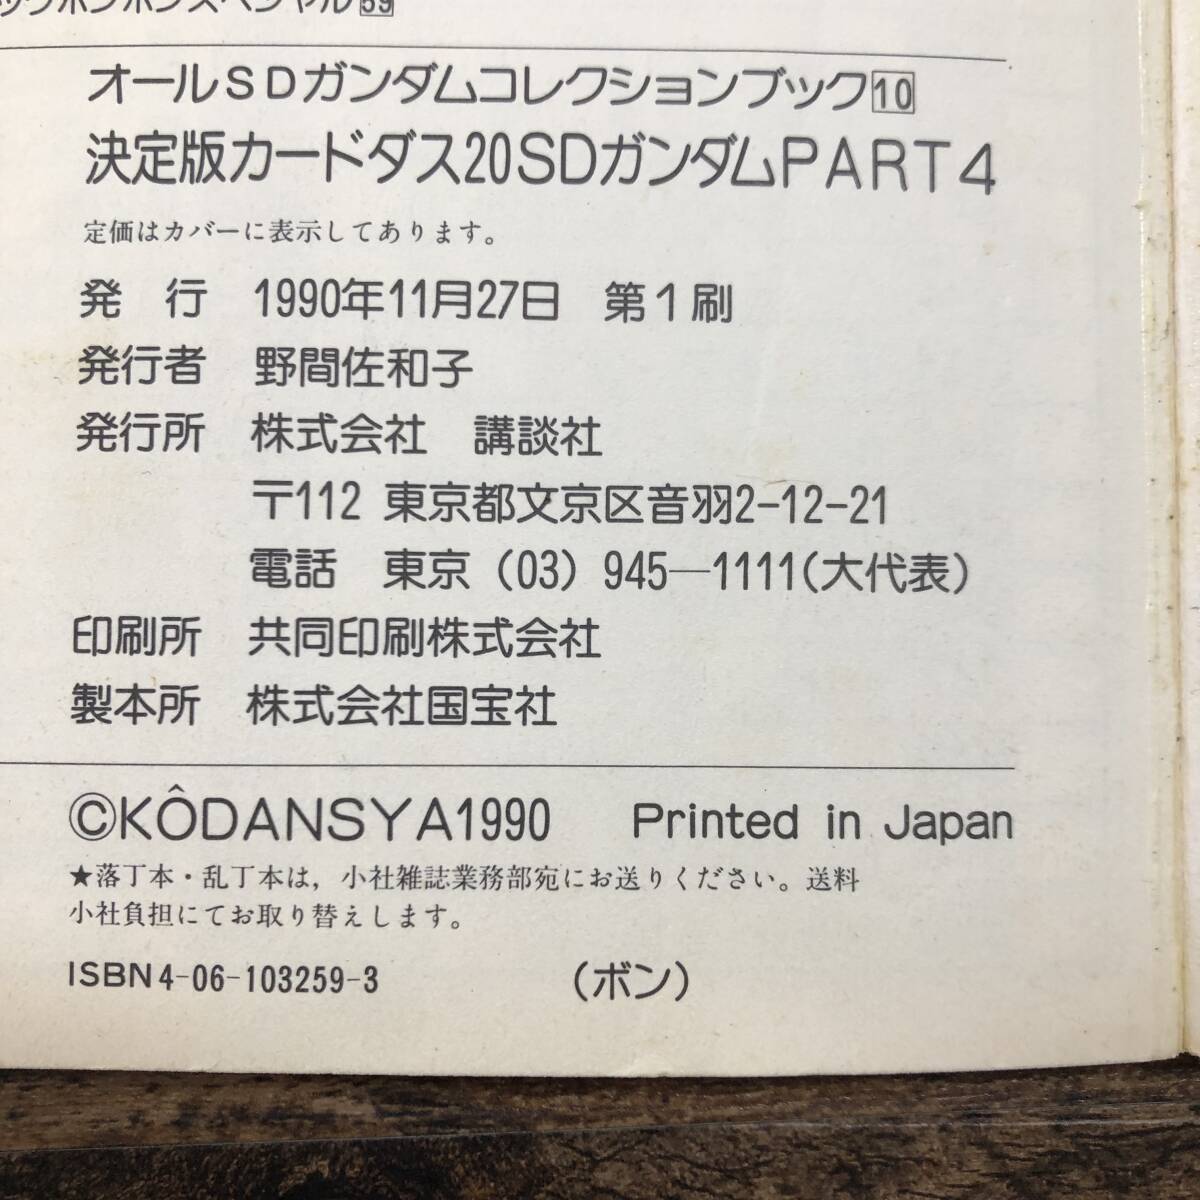 K-2492# решение версия Carddas 20SD Gundam PART4# комикс бонбон специальный (59)#.. фирма #1990 год 11 месяц 27 день no. 1.